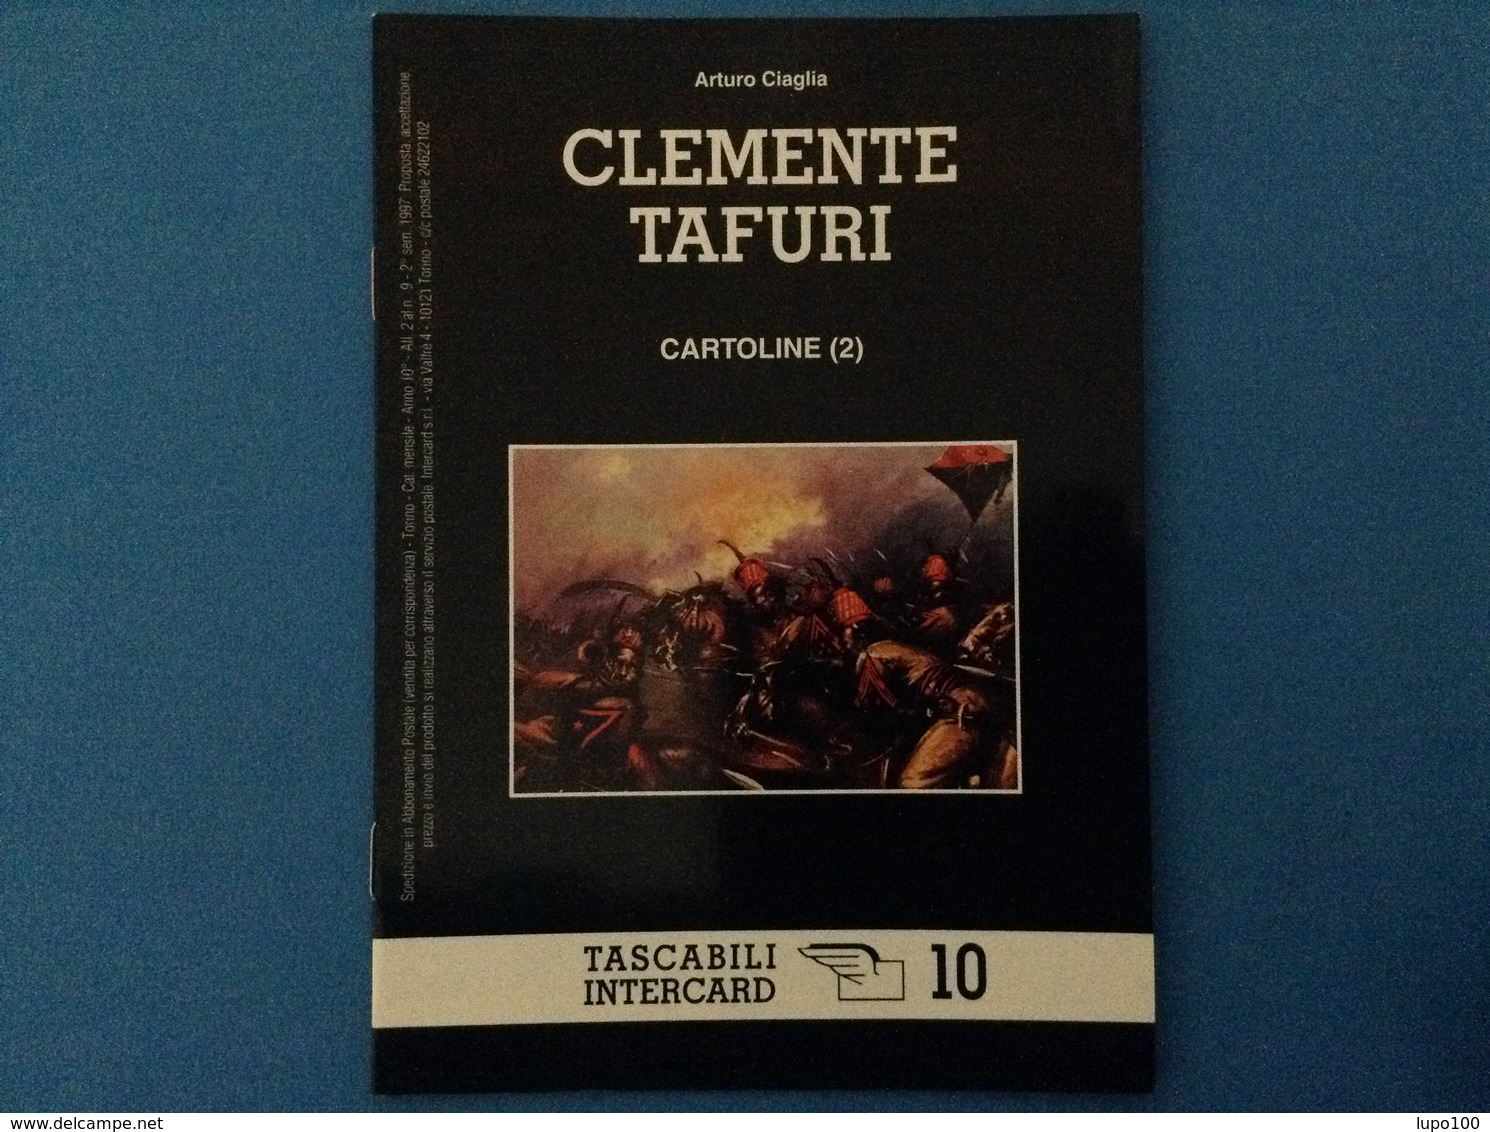 CARTOLINE CATALOGO TASCABILI INTERCARD N 10 ARTURO CIAGLIA CLEMENTE TAFURI - Italiano